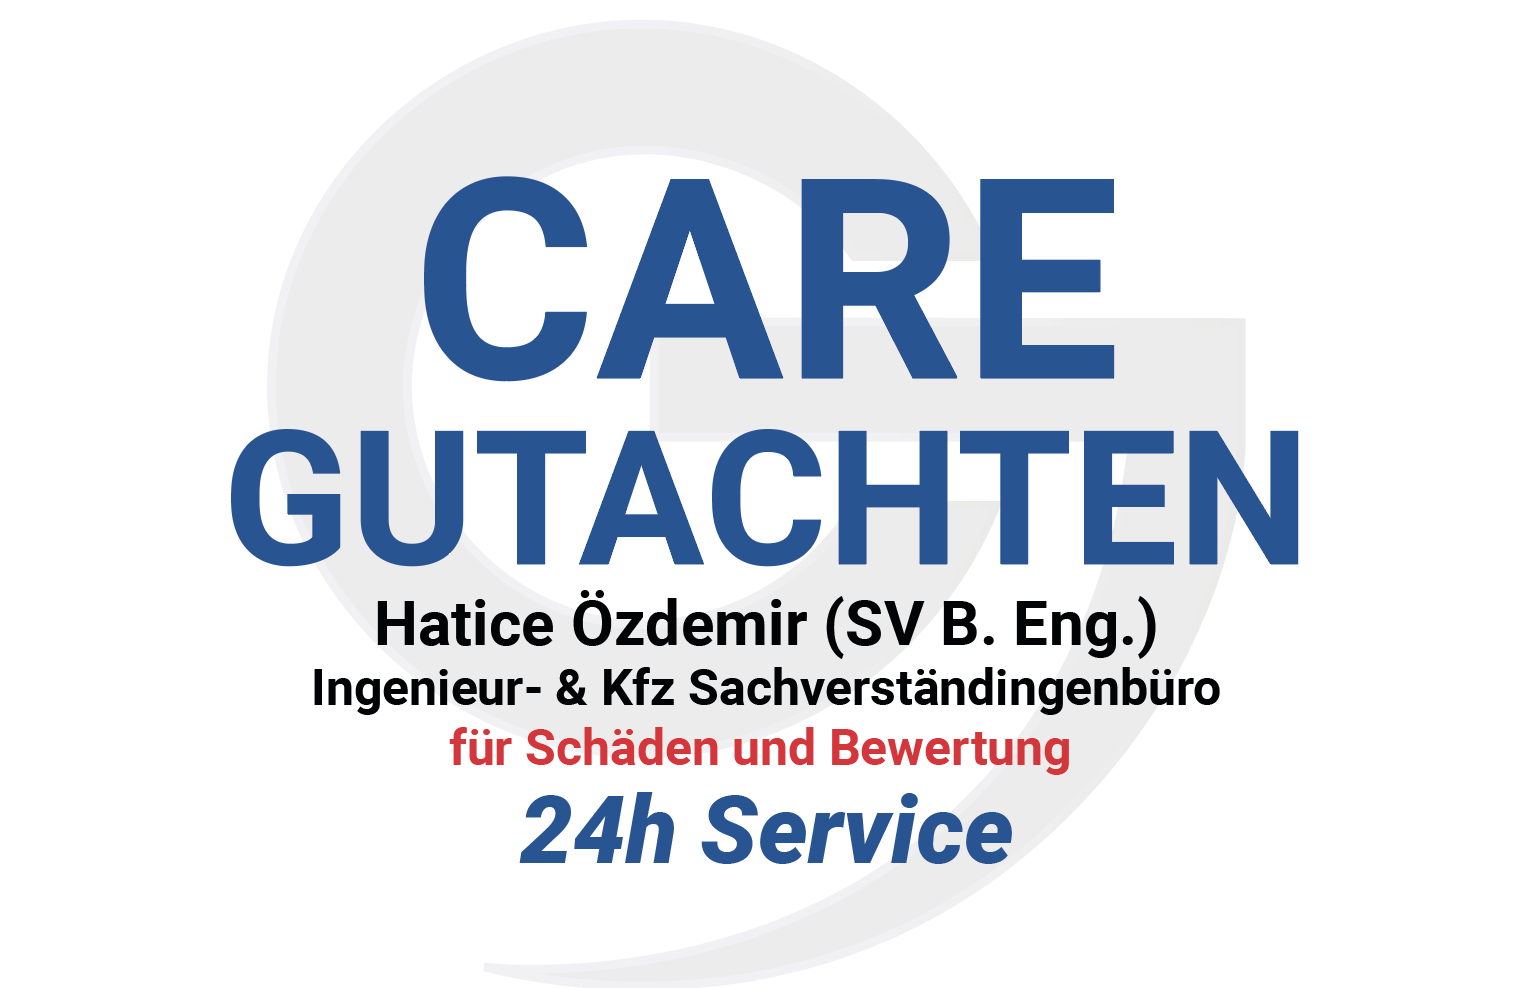 Care Gutachten 089 München